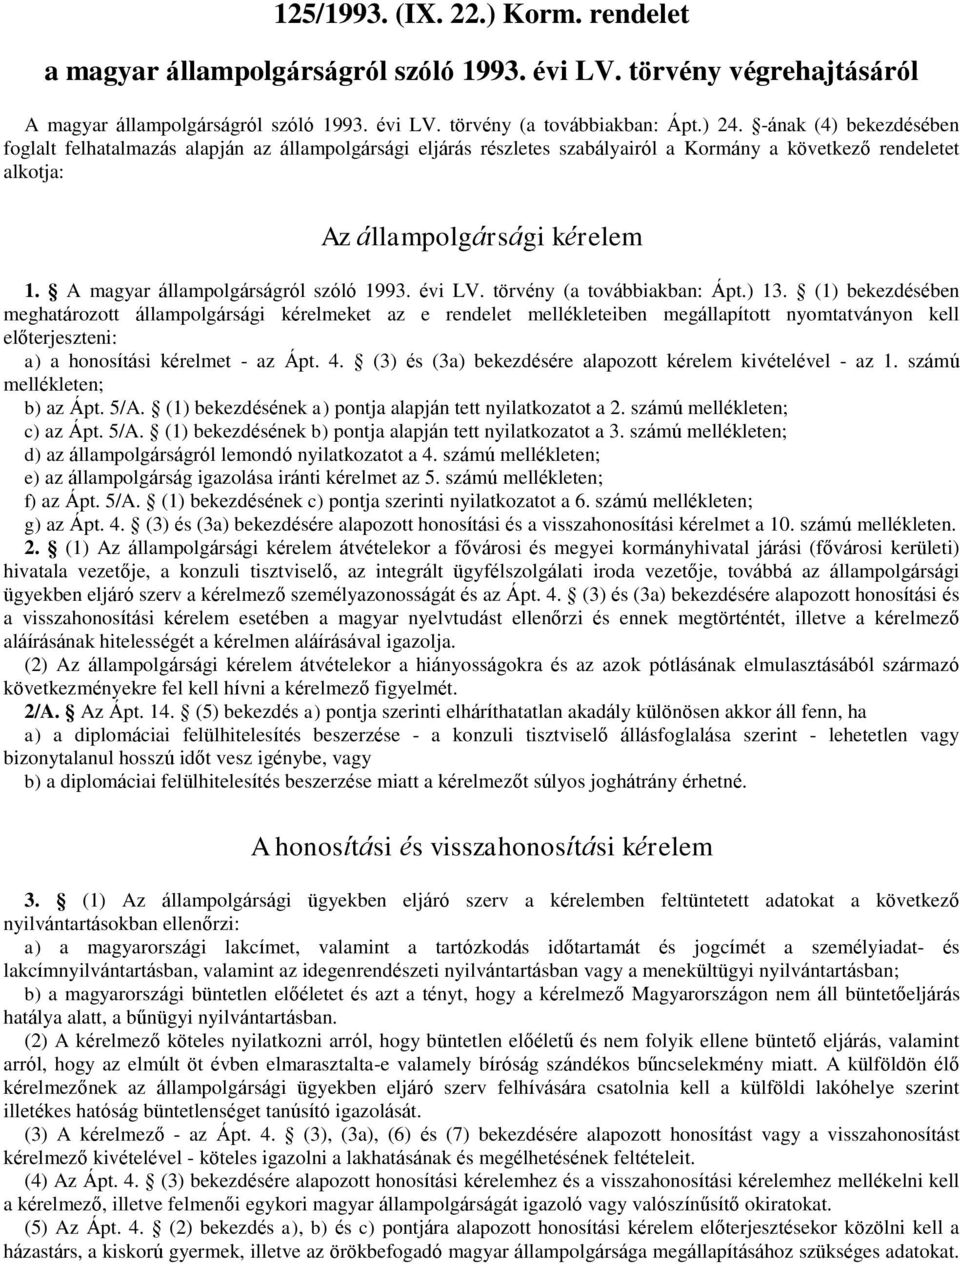 A magyar állampolgárságról szóló 1993. évi LV. törvény (a továbbiakban: Ápt.) 13.